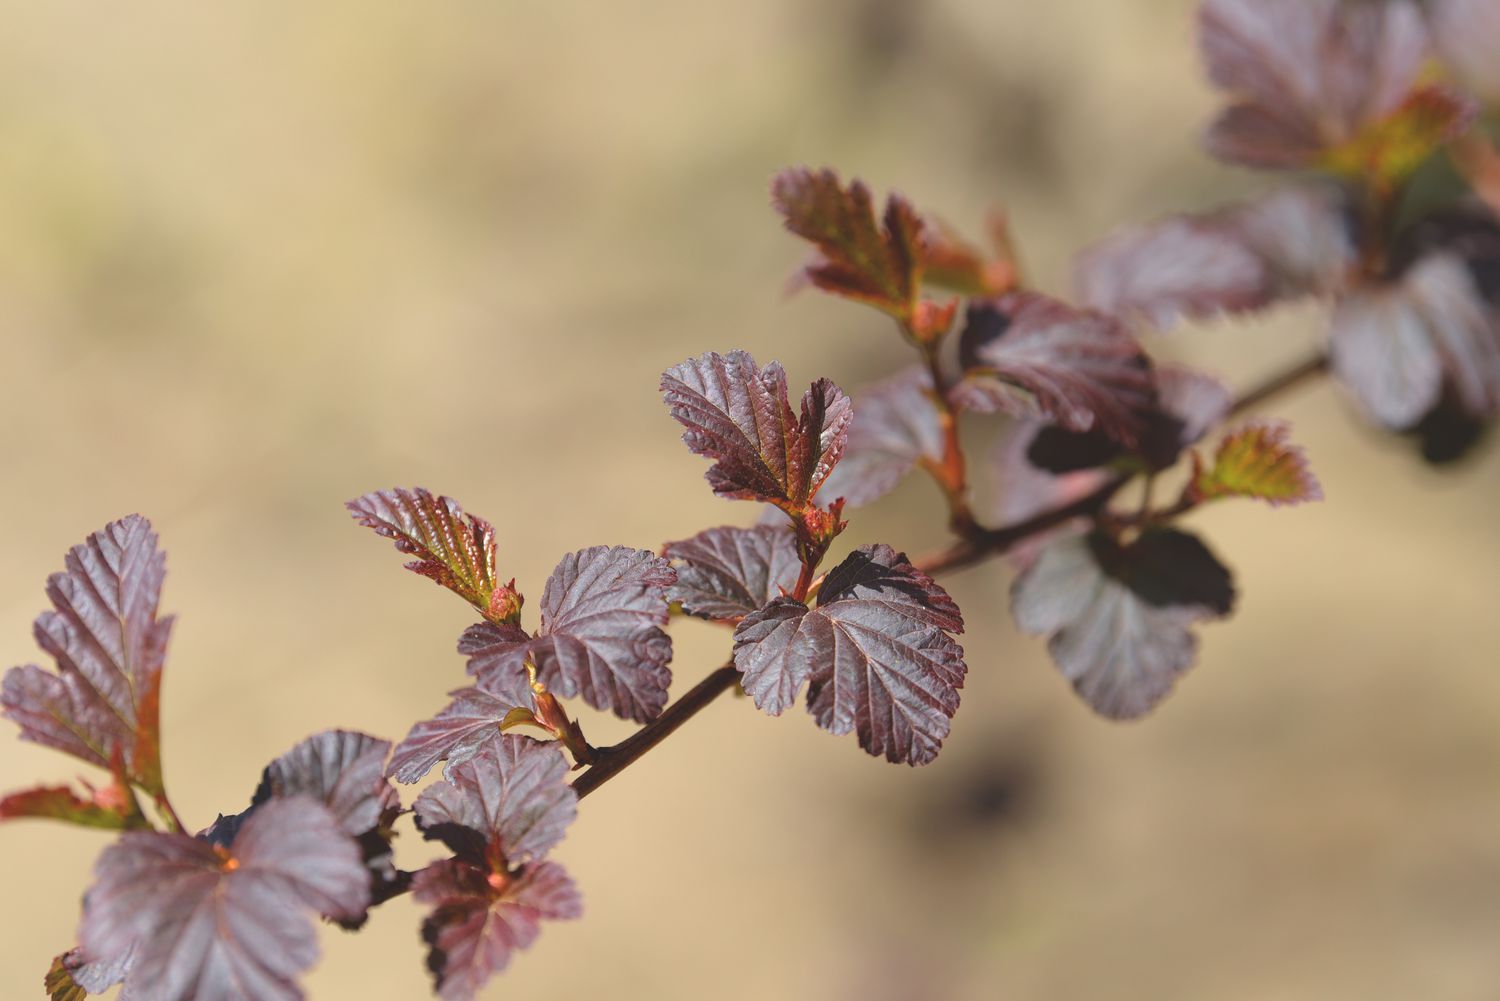 Diablo-Neunrindenzweig mit rötlichen und purpurnen Blättern im Sonnenlicht in Nahaufnahme